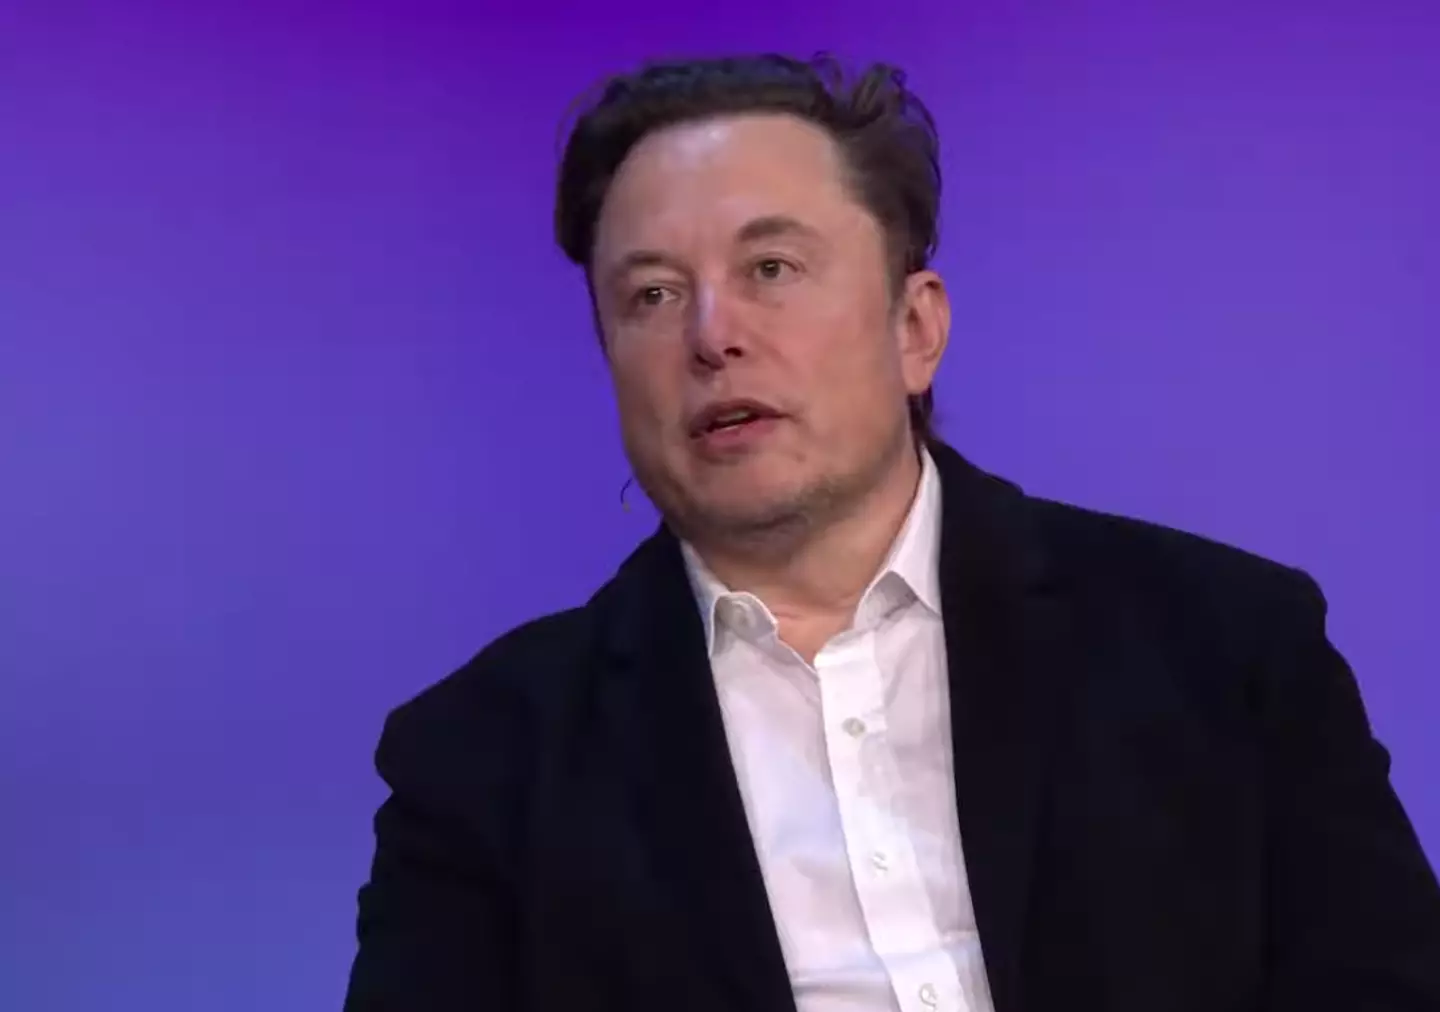 Elon Musk explains why he'd like to buy twitter, for $40 billion.